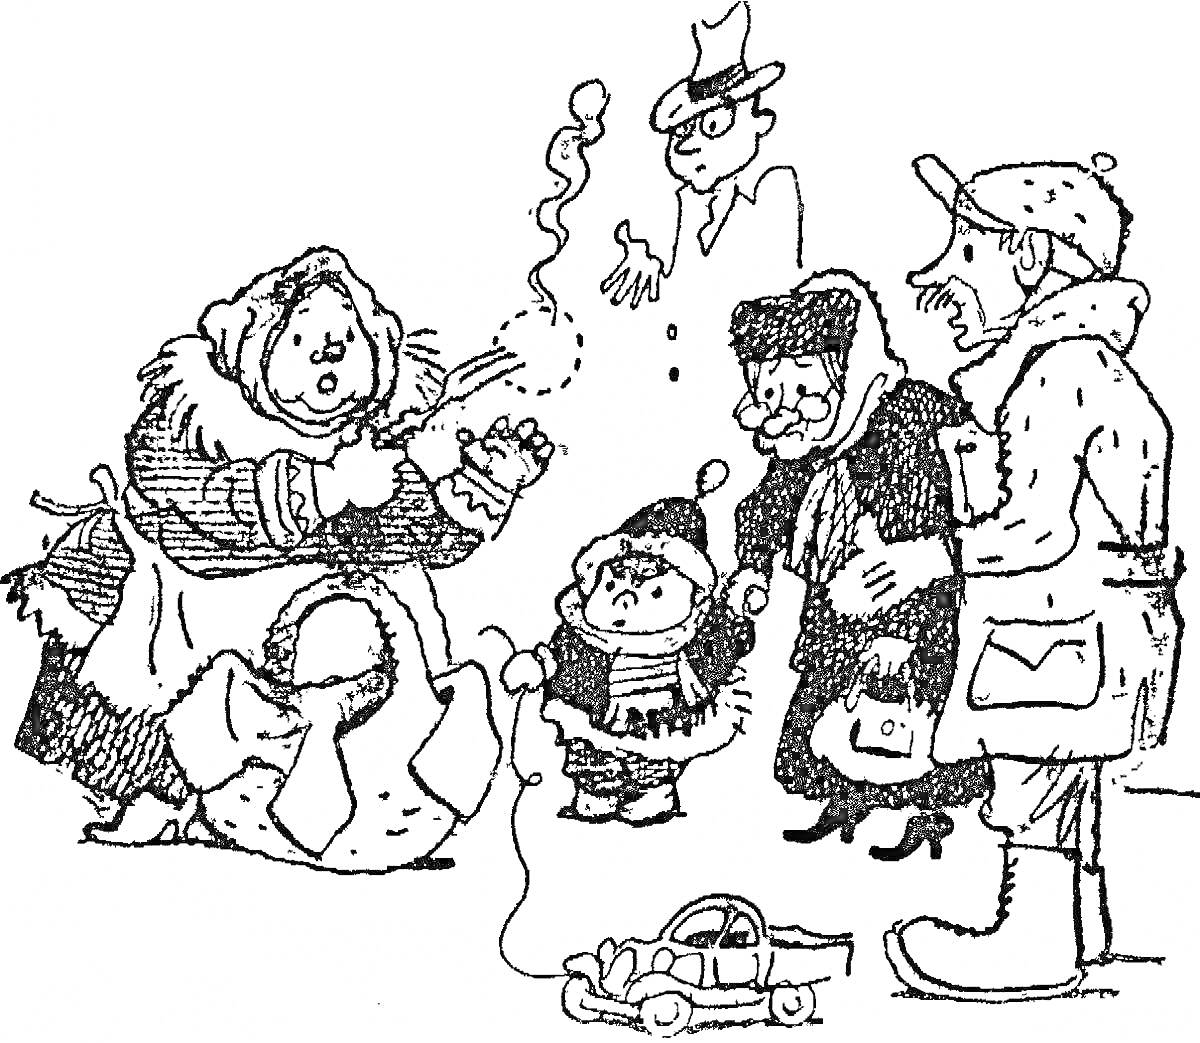 Женщина в длинном платье с платком на голове, выпускающая из рук дым, ребенок в шапке и шарфе рядом с игрушечной машинкой, двое пожилых людей в шапках и шарфах, мужчина в кепке, силуэт с очками и шляпой в воздухе